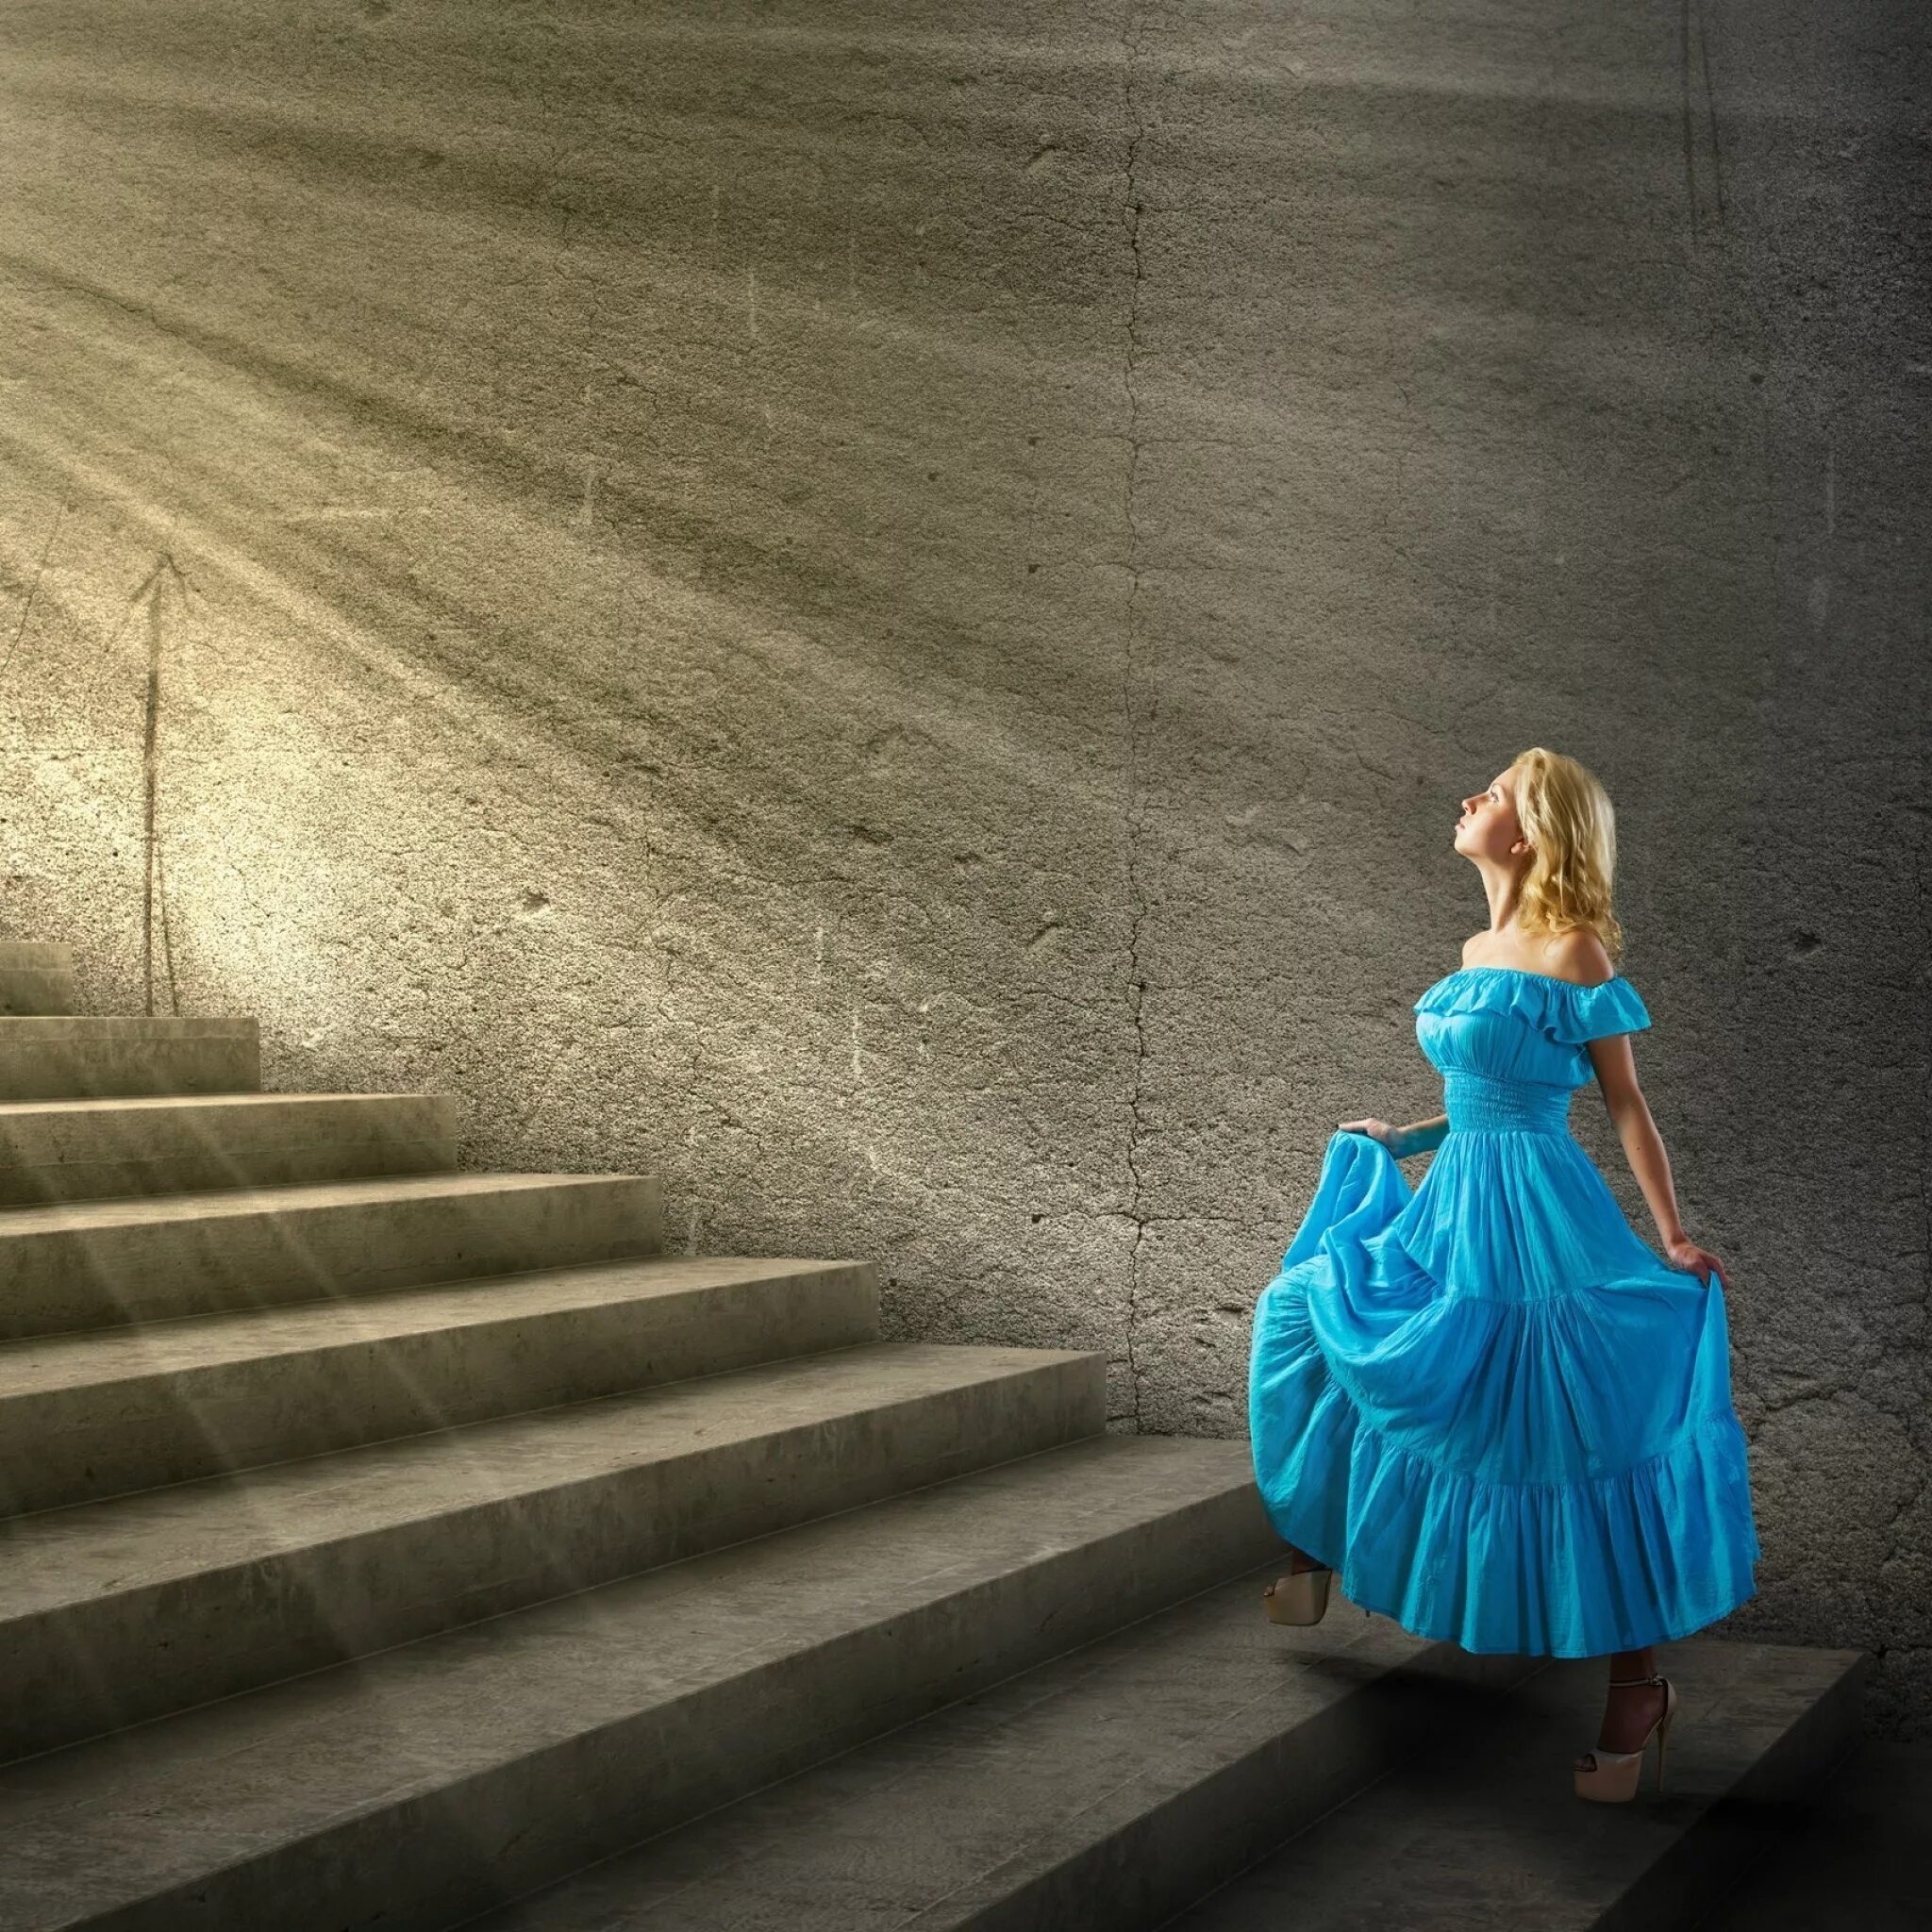 Девушка в платье. Девушка поднимается по лестнице. Девушка в платье на ступеньках. Девушка на лестнице в платье. Неслышно ступая